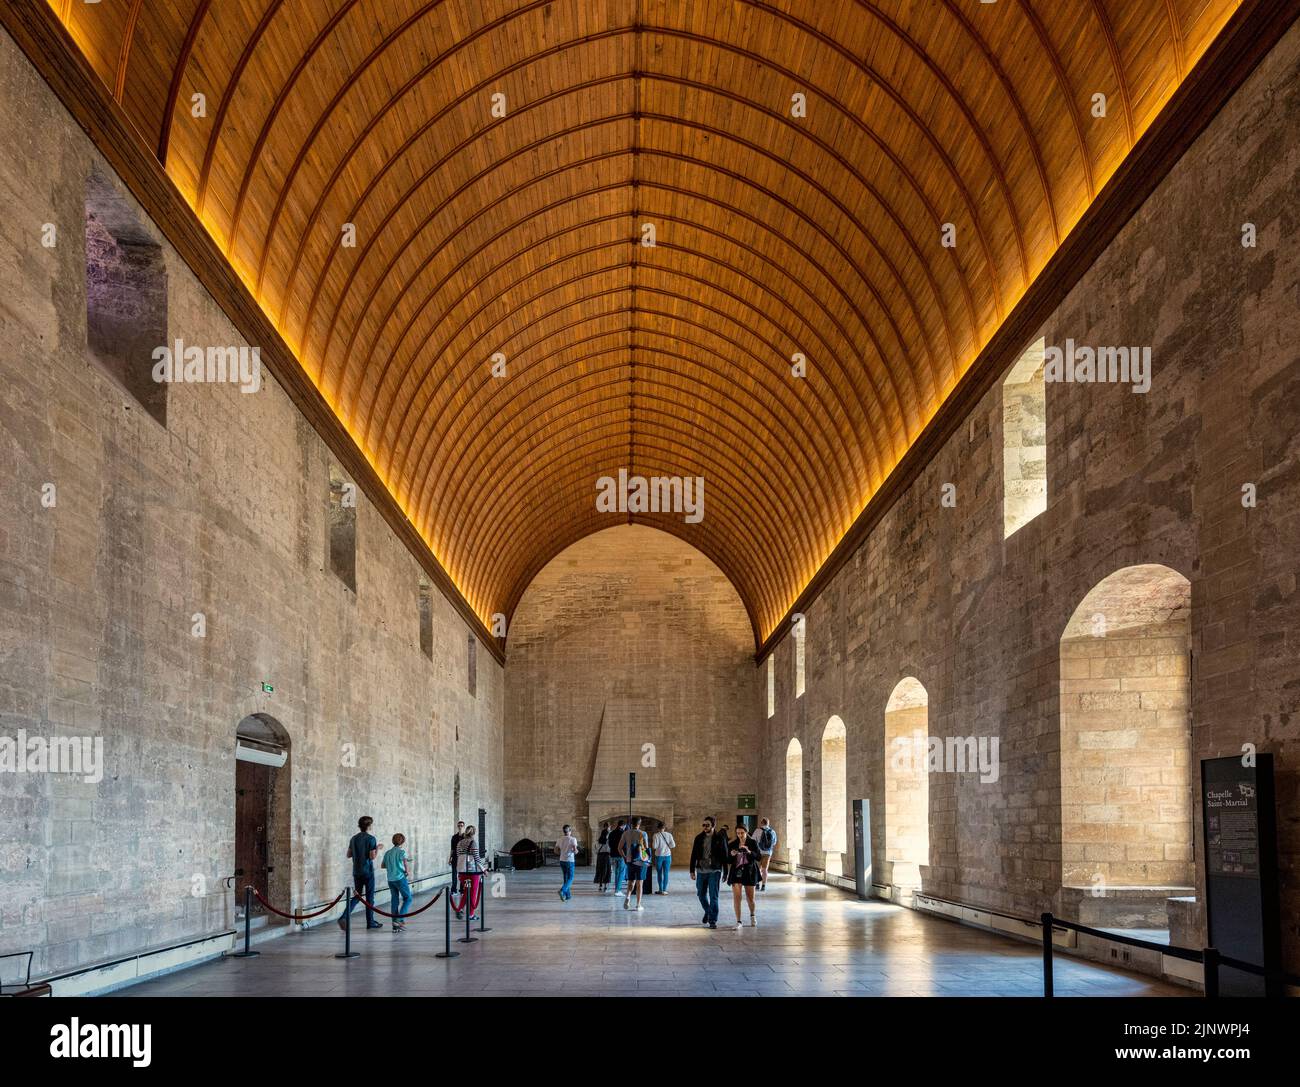 Grand Tinel, oder Bankettsaal, Palais des Papes - Palast der Päpste, Avignon, Vaucluse, Frankreich. Das historische Zentrum von Avignon ist ein UNESCO World He Stockfoto